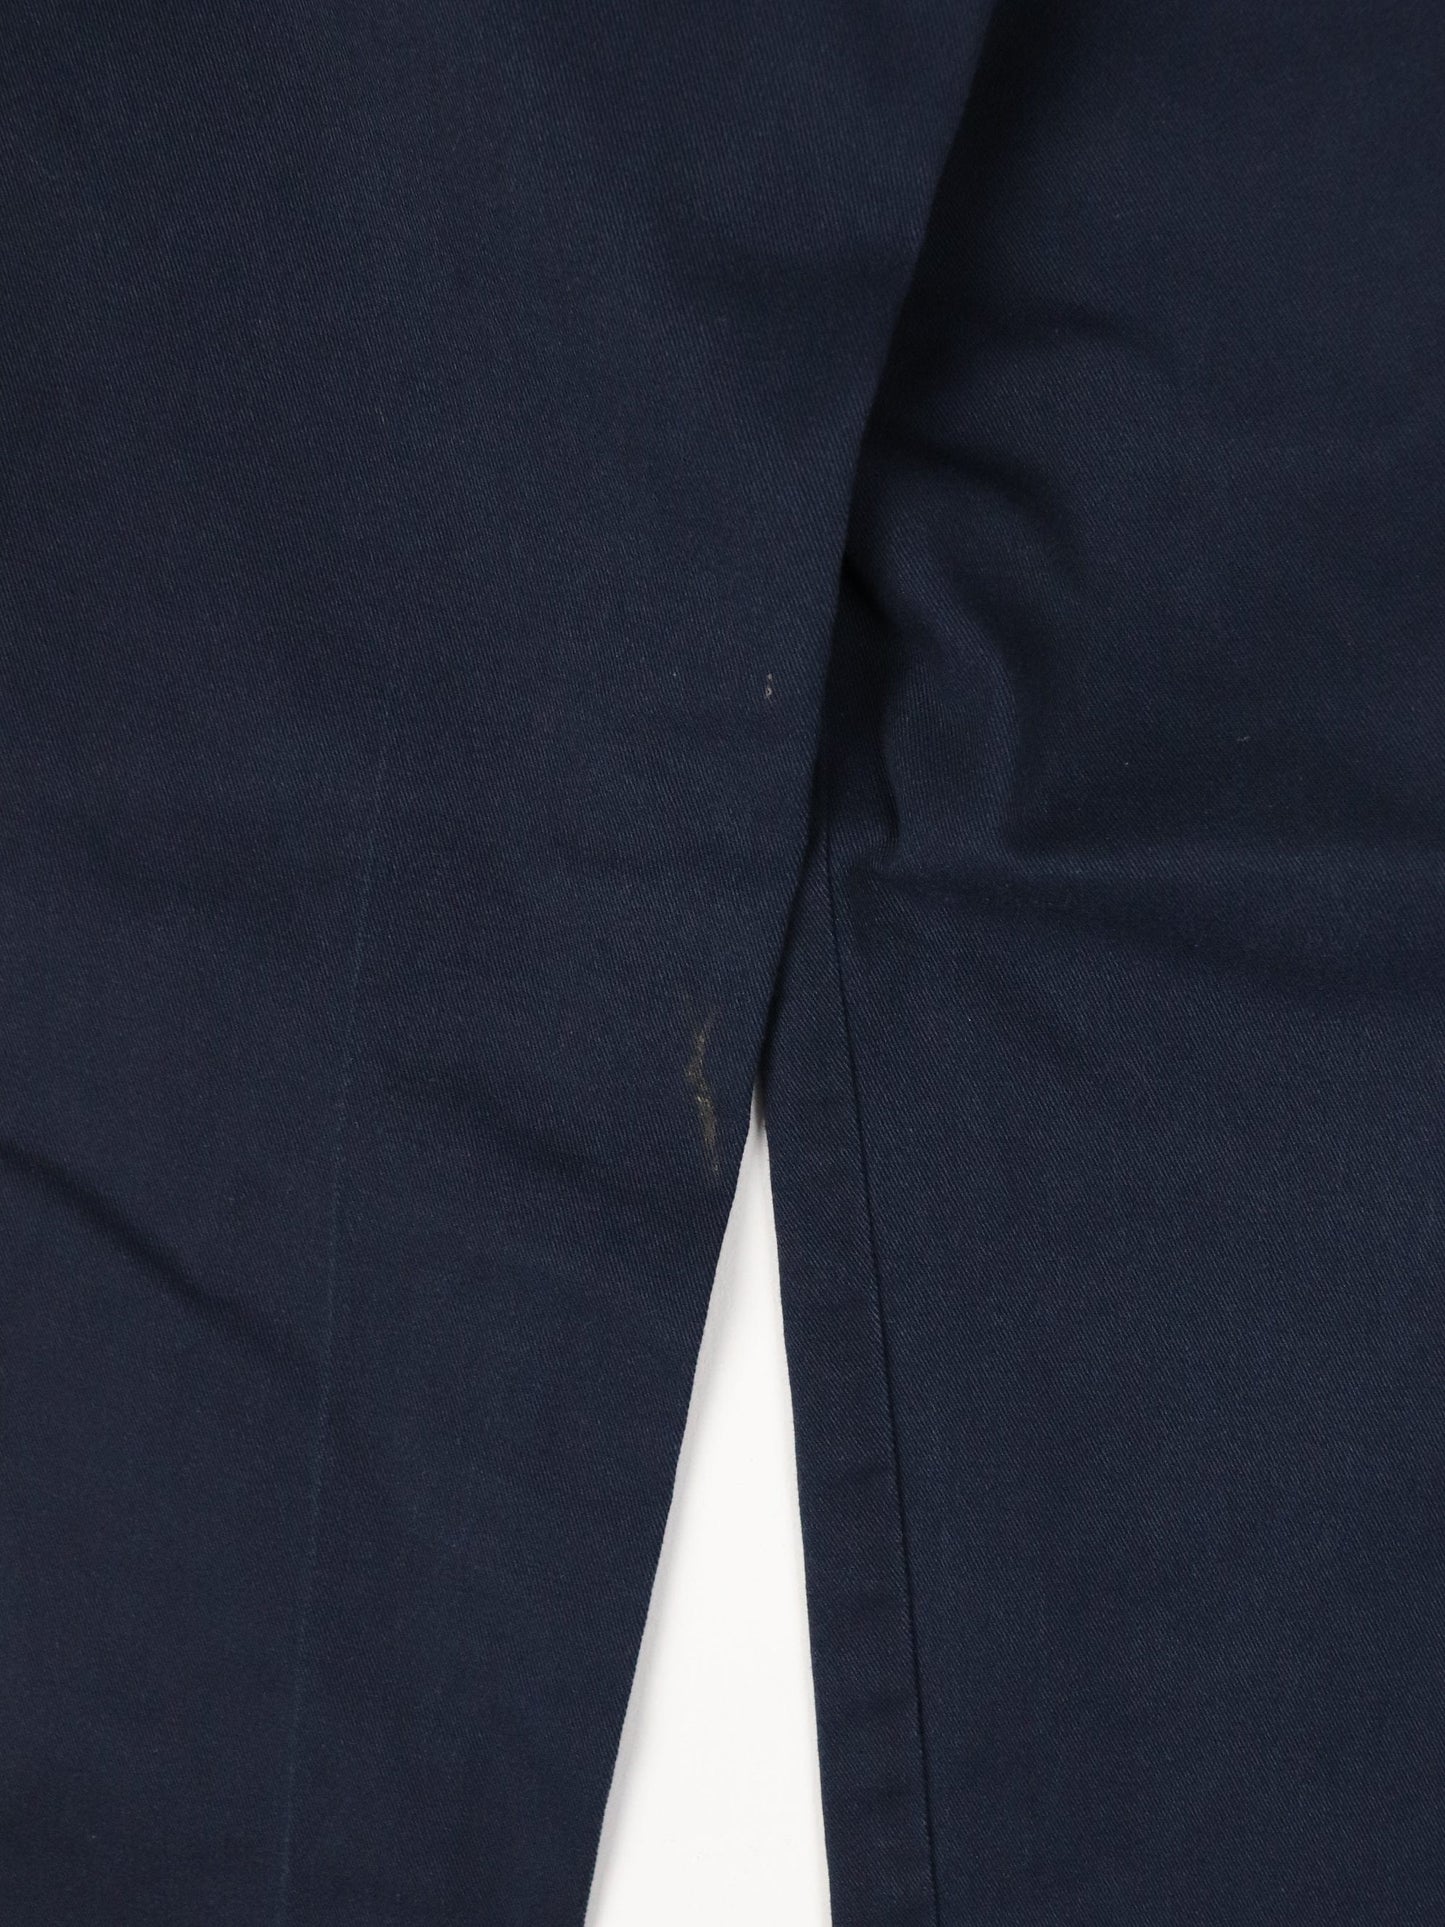 Dickies Pants Dickies Pants Fits Mens 30 x 31 Blue Chino Work Wear Slim Straight